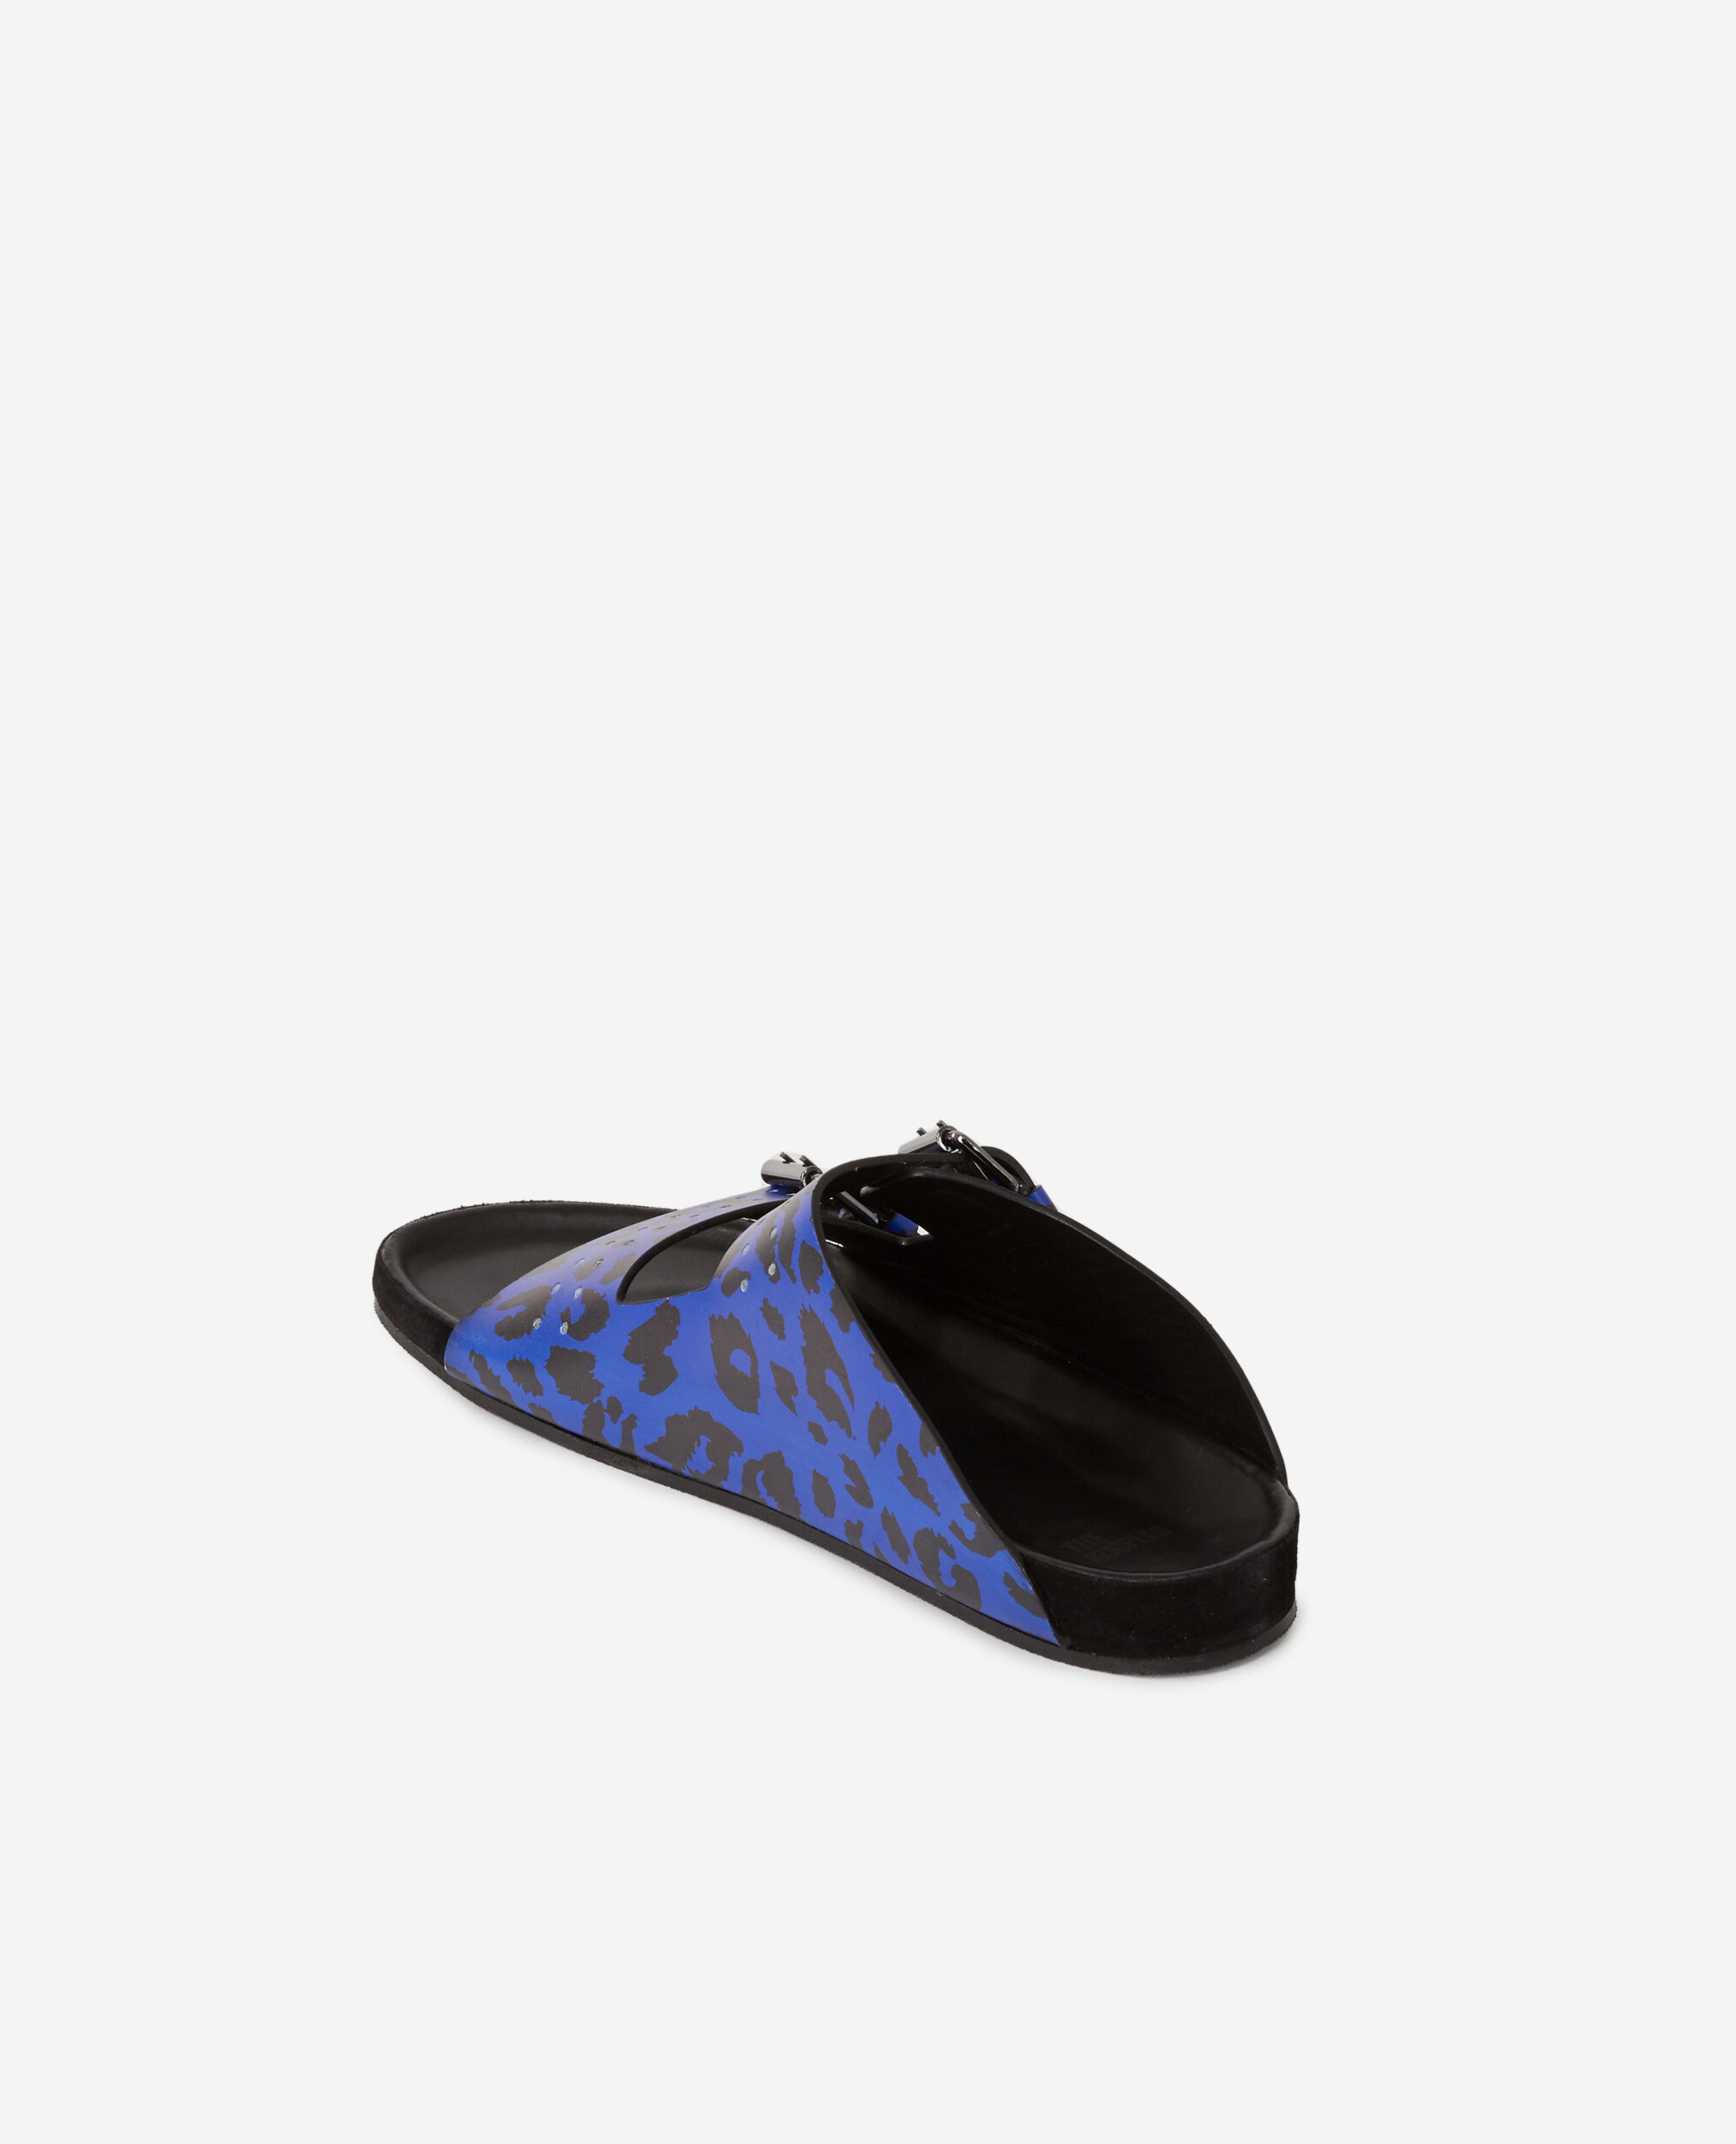 Blaue Sandalen aus Leder mit Leopardenmotiv, BLUE, hi-res image number null